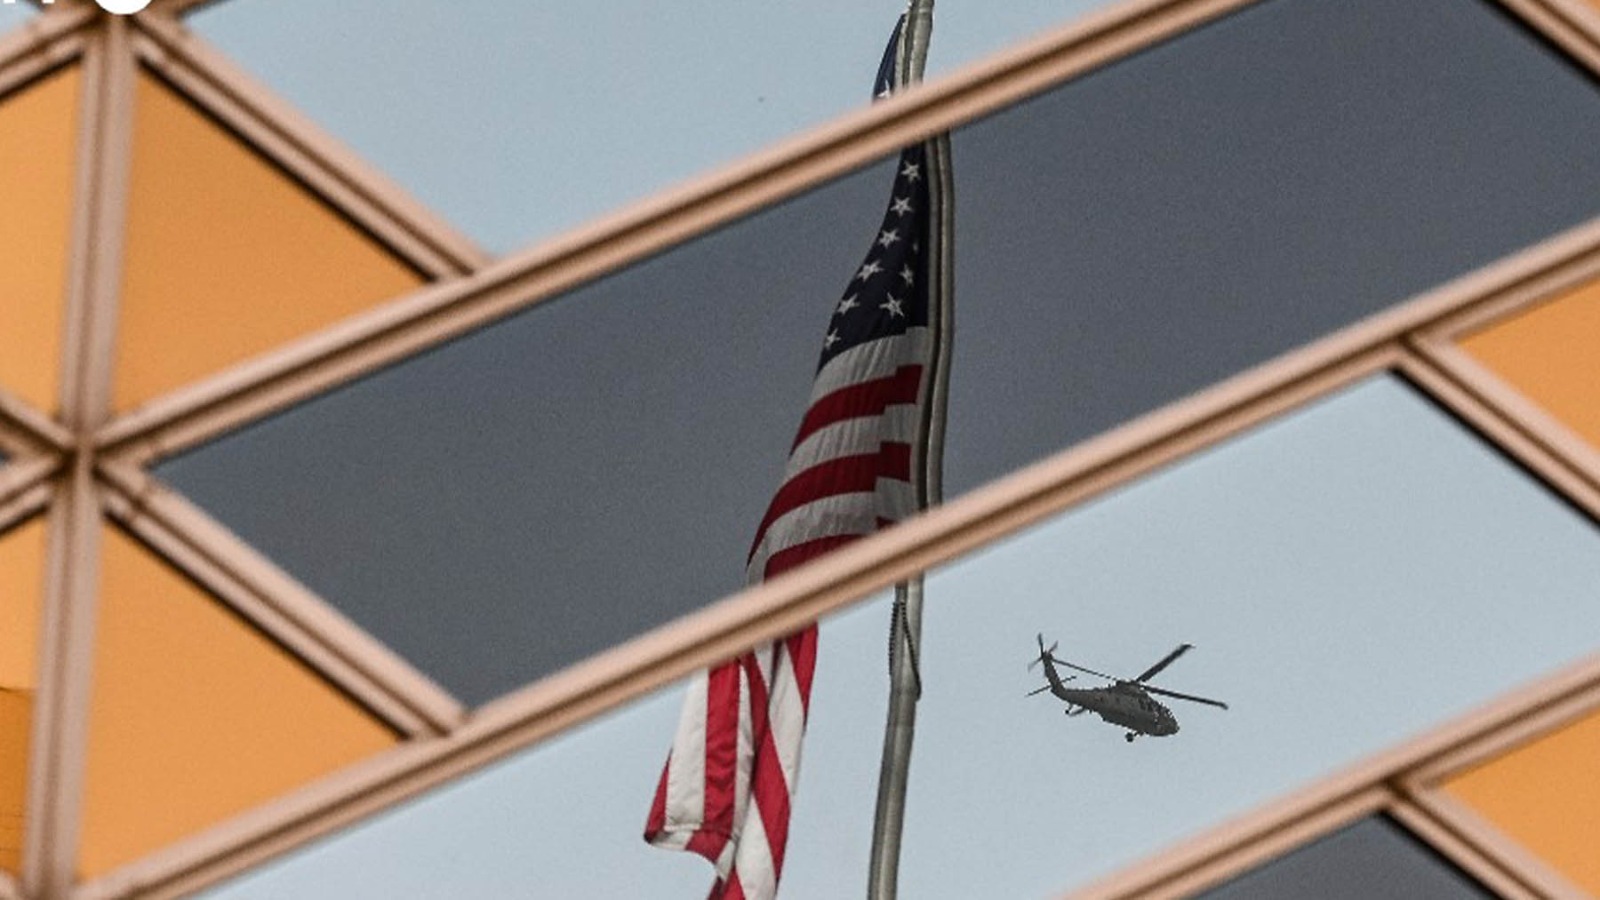 Un helicóptero sobrevuela la embajada de EEUU en Kabul. (AFP)